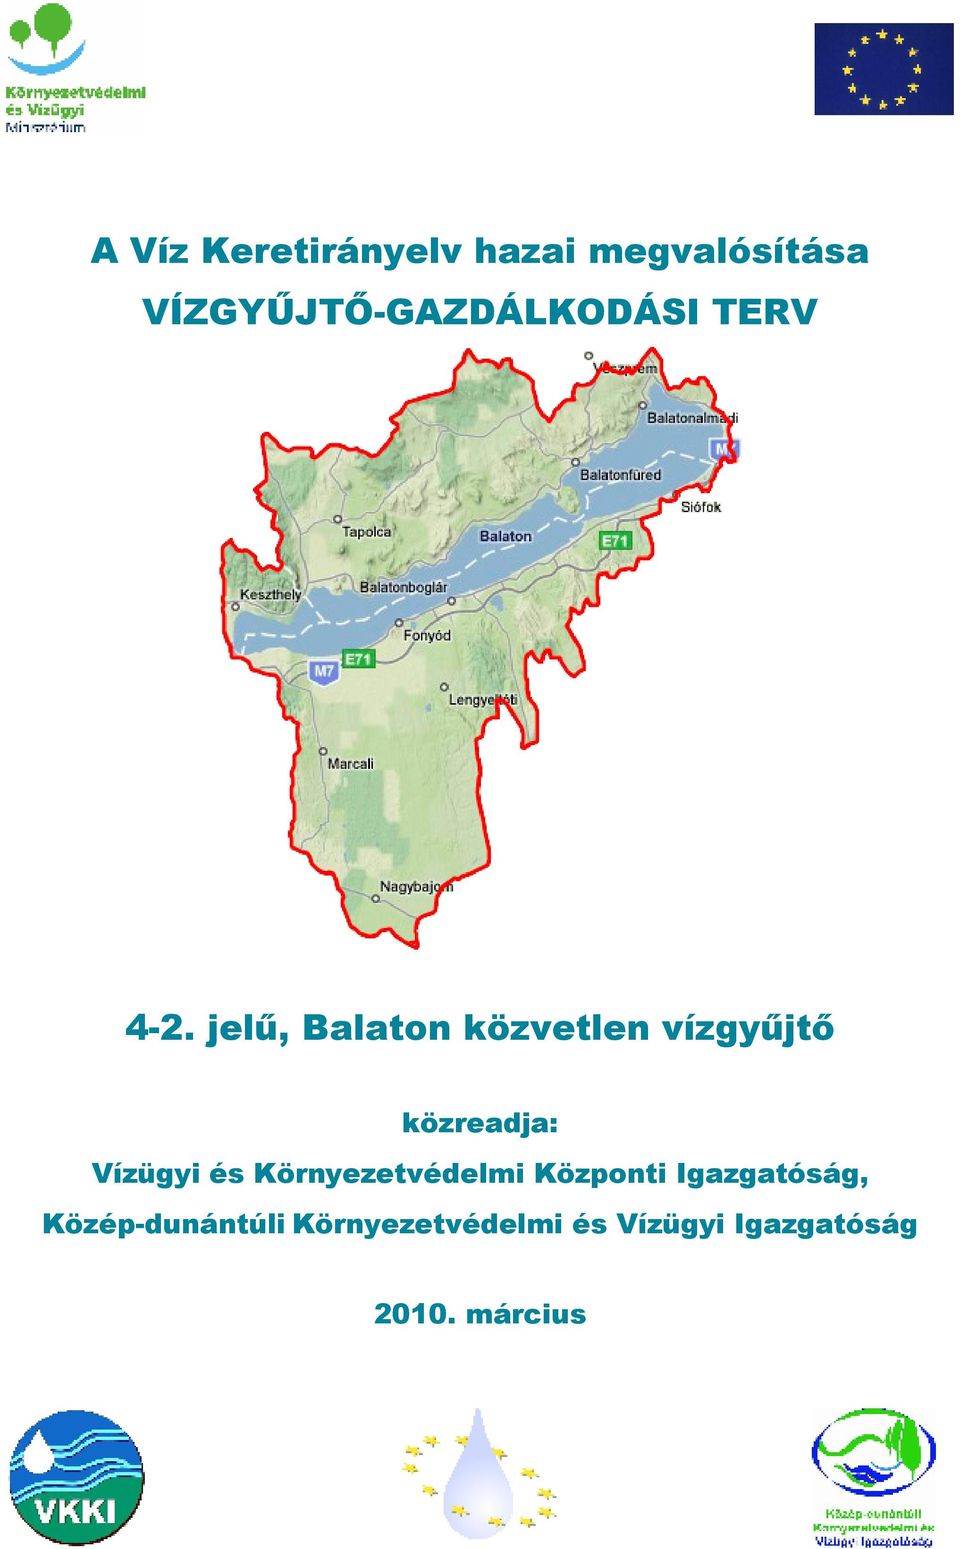 jelő, Balaton közvetlen vízgyőjtı közreadja: Vízügyi és